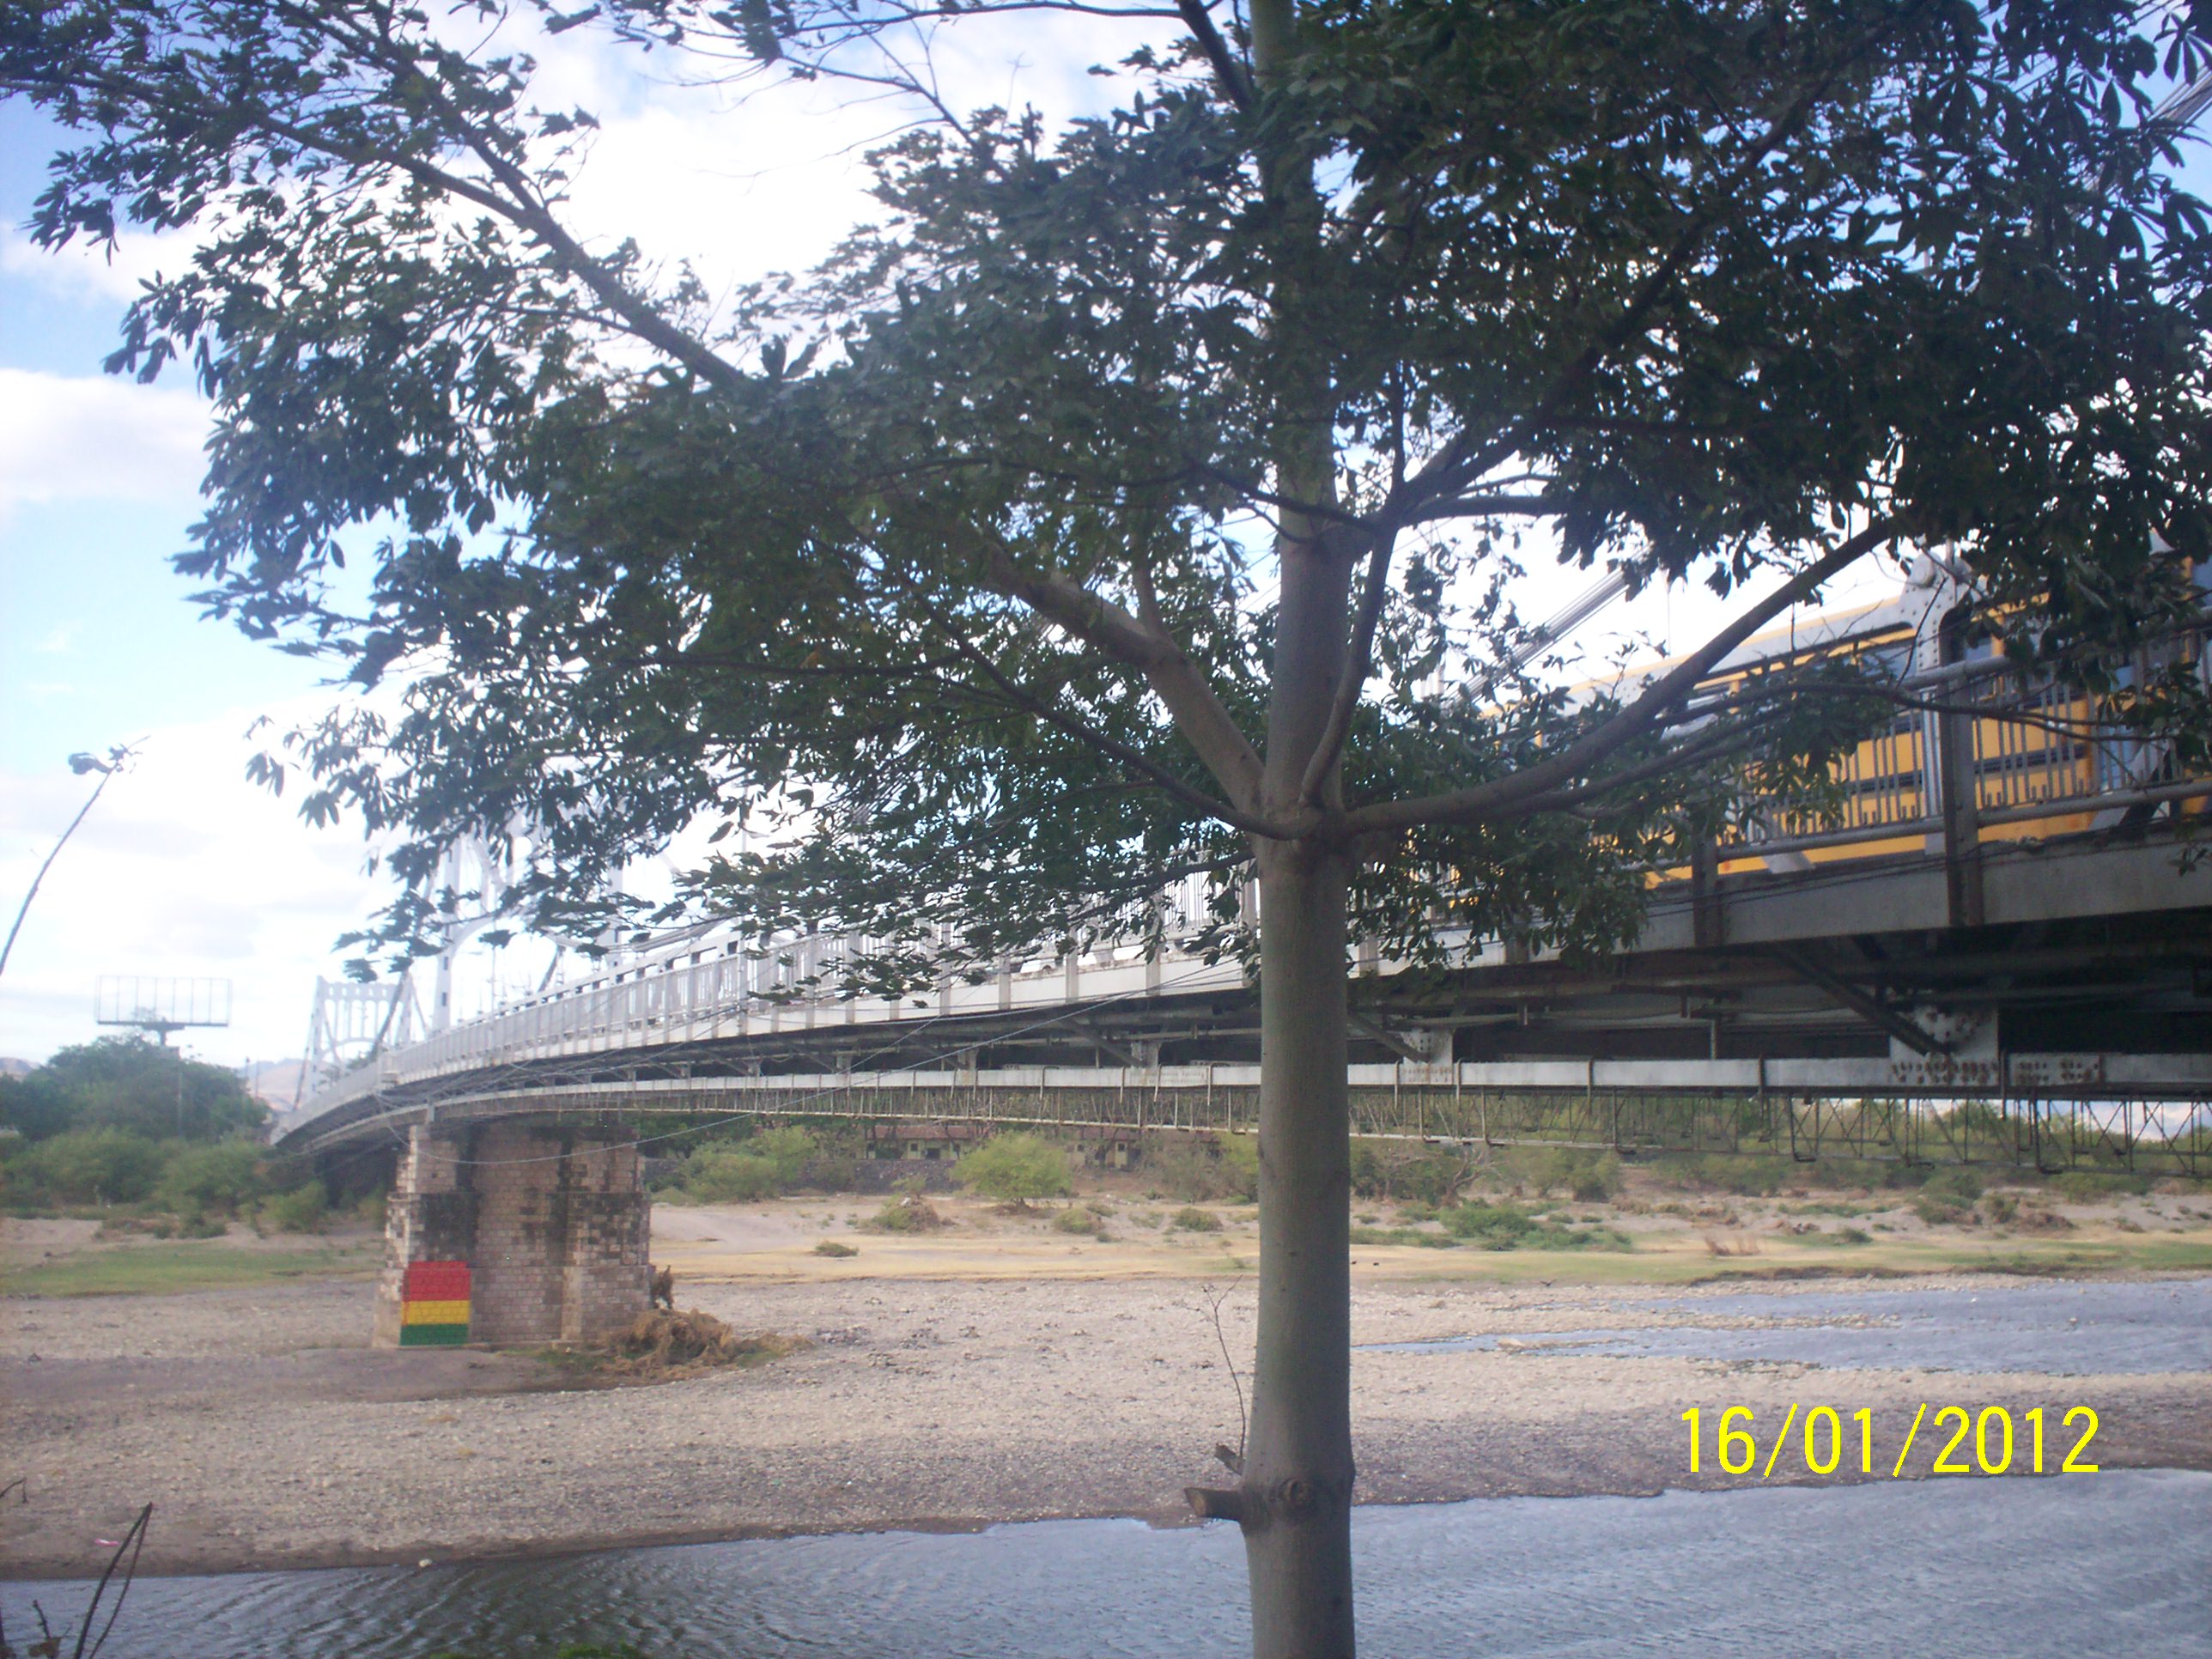 Foto: Puente de choluteca - Choluteca, Honduras